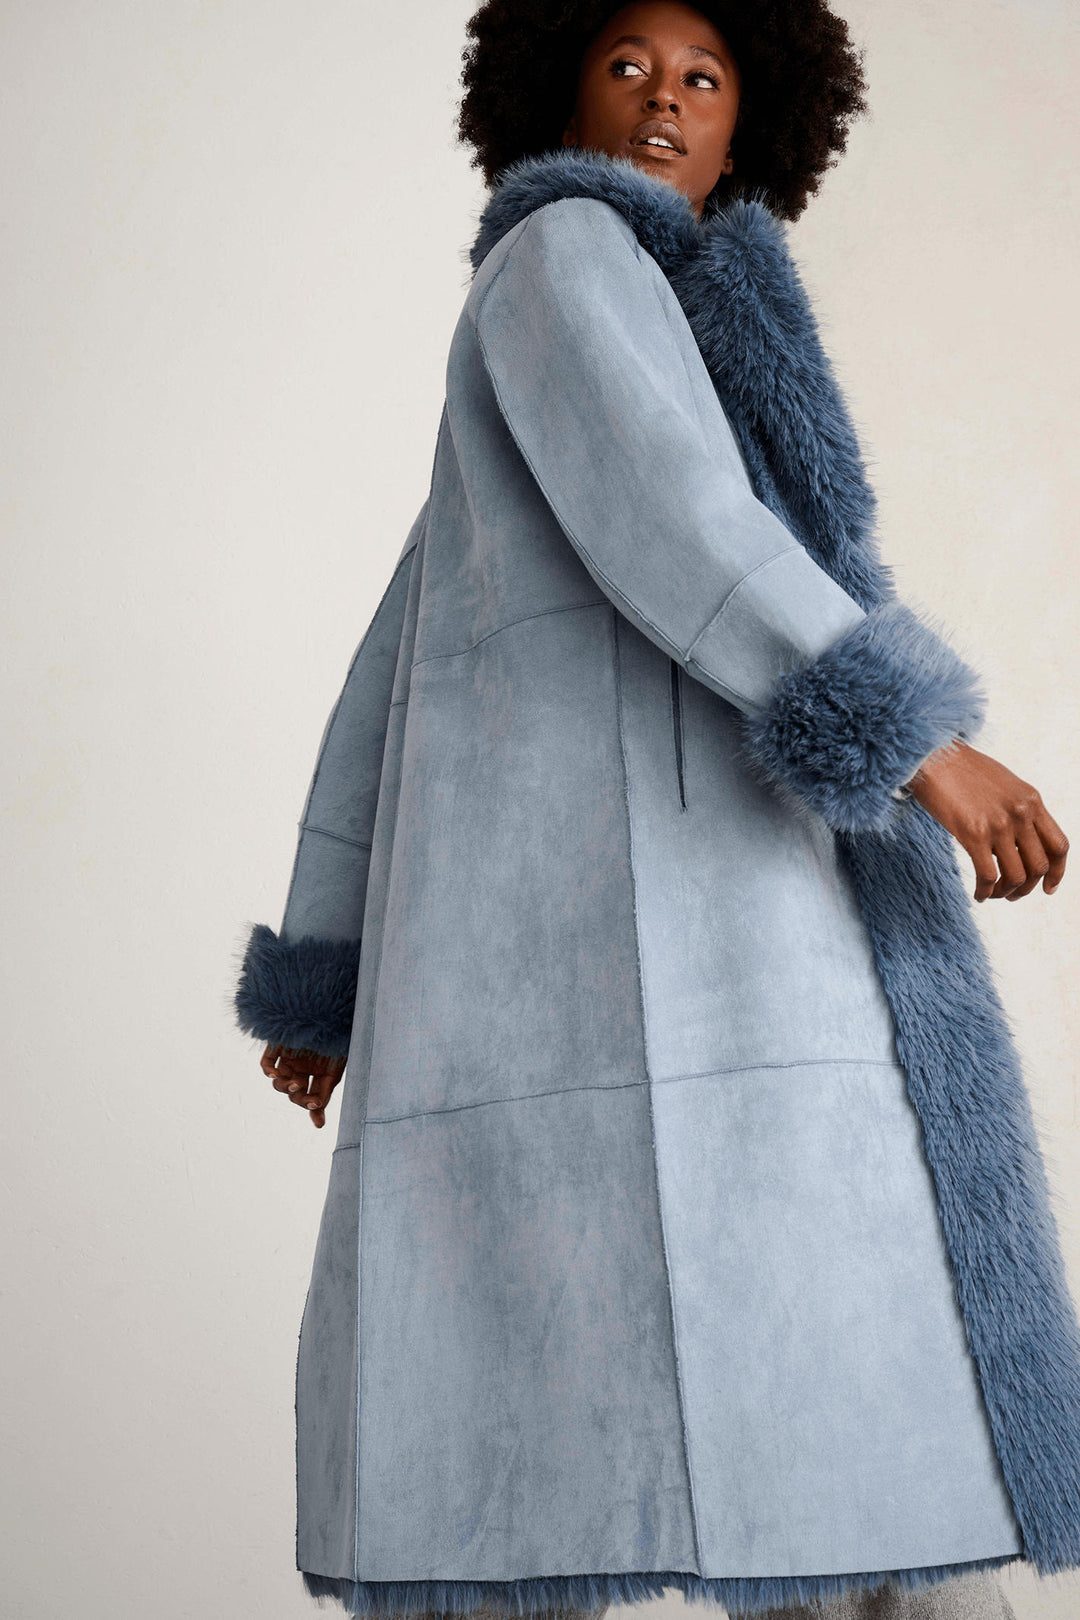 K Design X906 China Blue Reversible Faux Suede & Faux Fur Coat - Experience Boutique